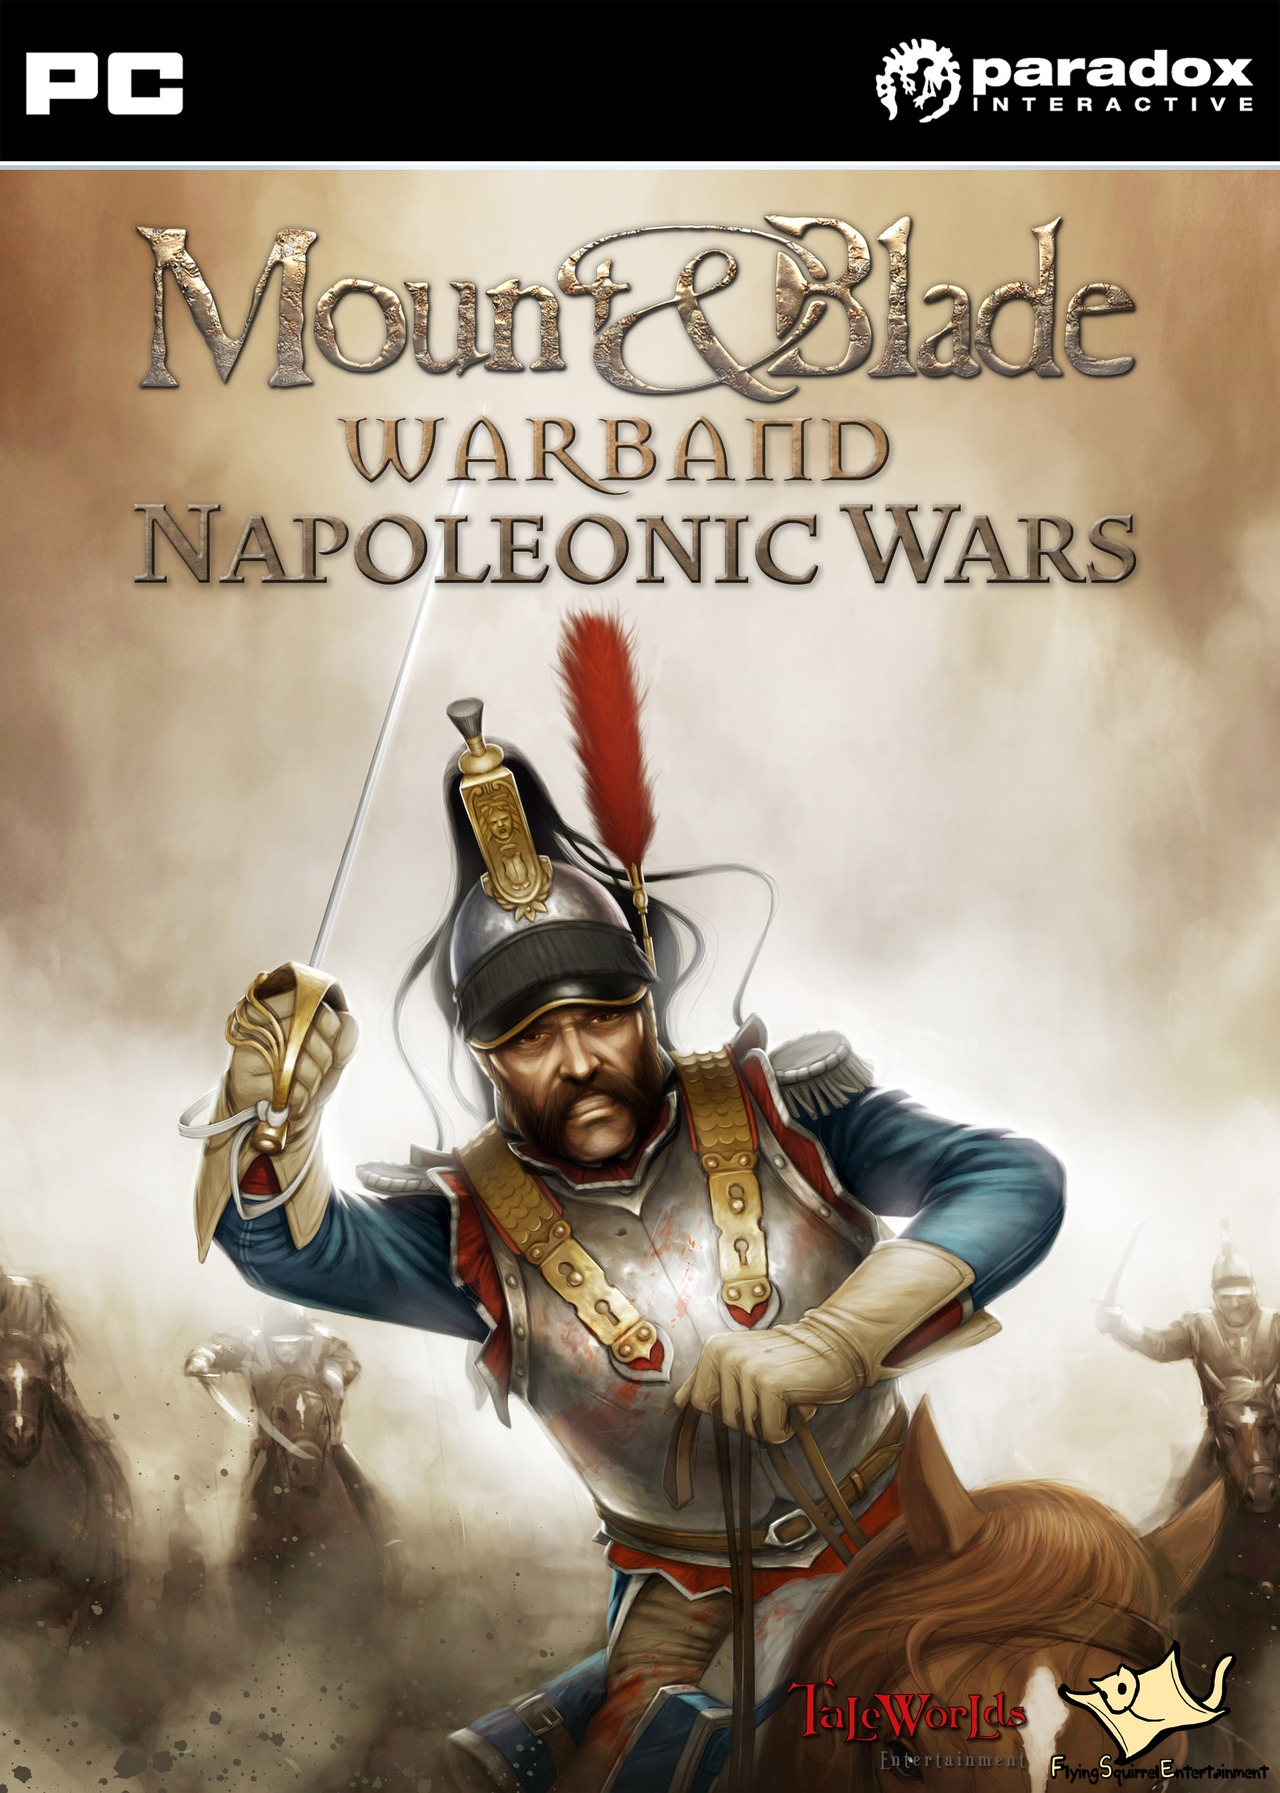 Mount &amp; Blade: Warband - Napoleonic Wars